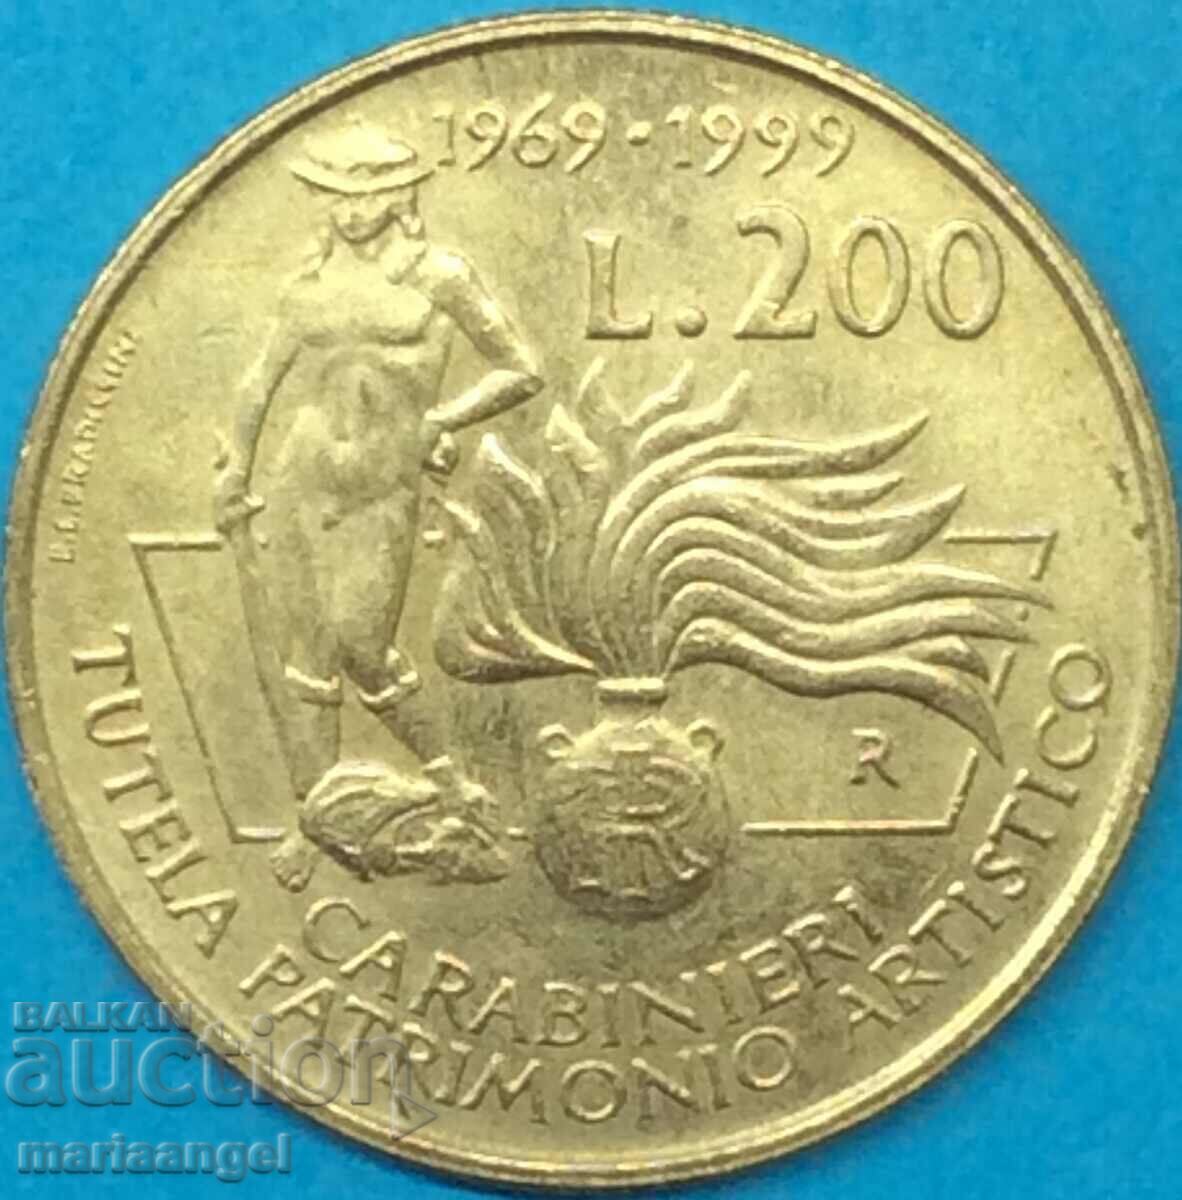 200 Лири 1999 Италия